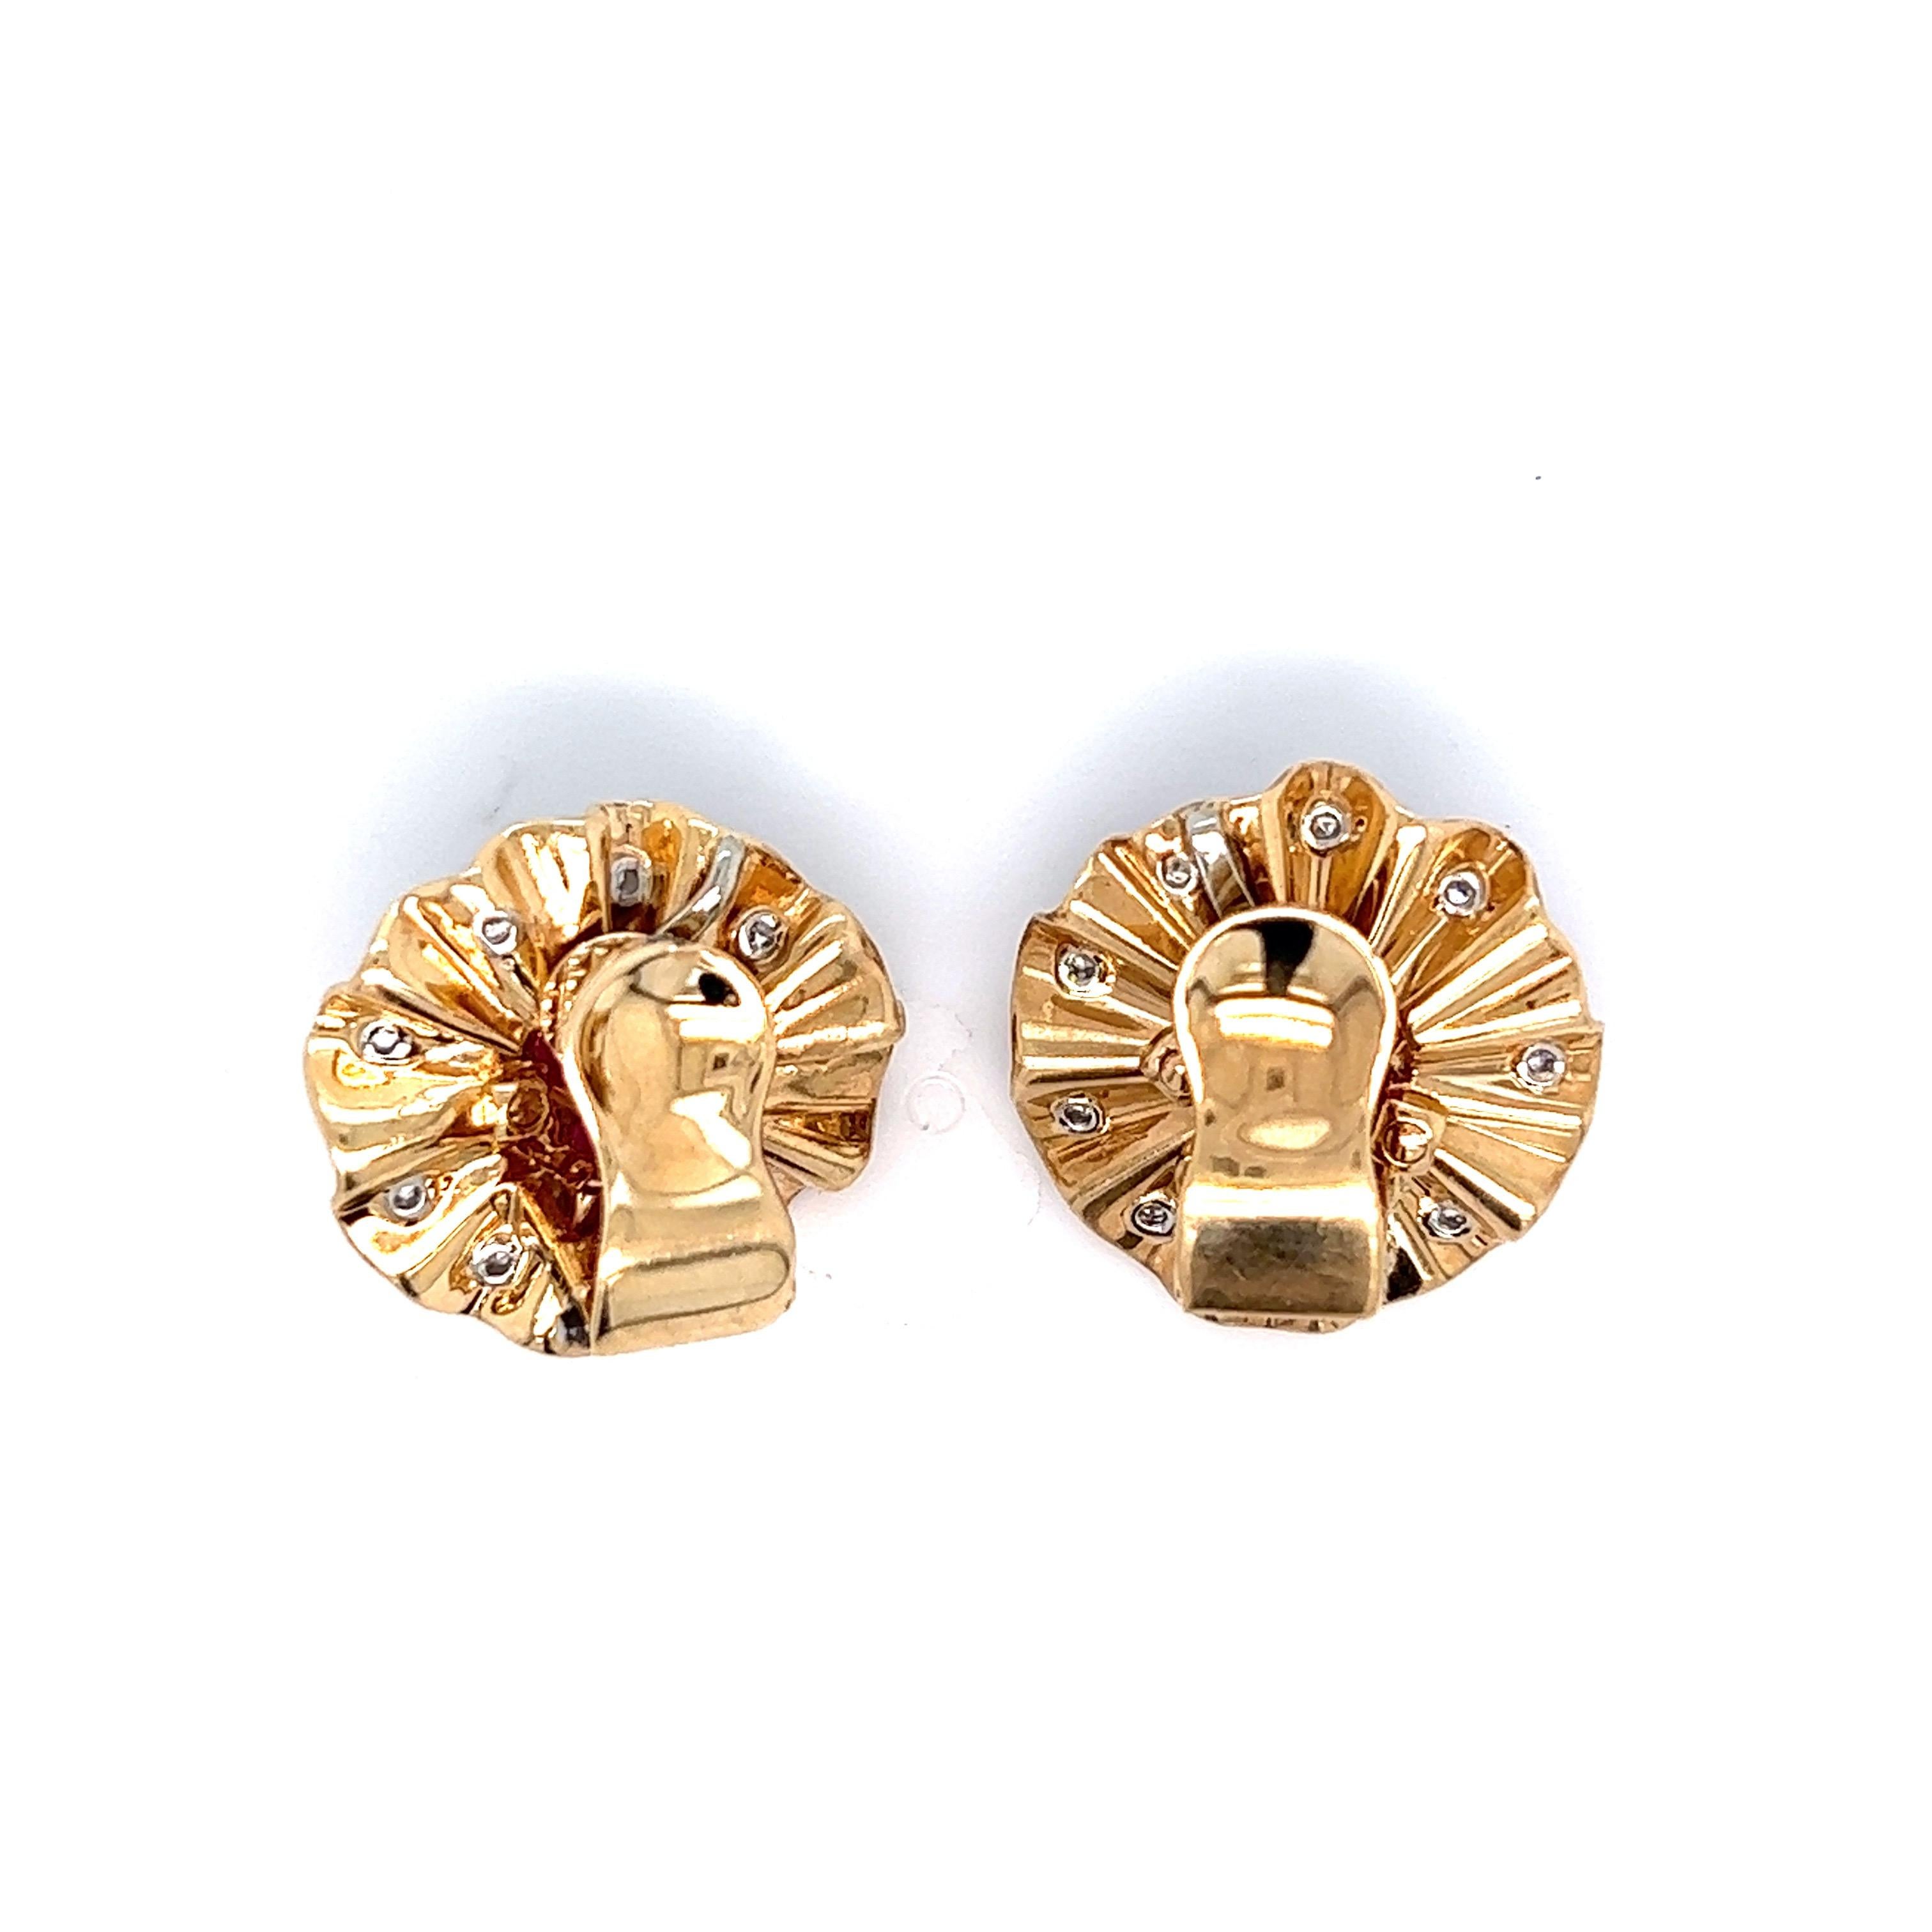 Clips d'oreilles en or jaune 18 carats Trabert et Hoeffer Mauboussin, marqués AT&HM

Rubis cabochon d'environ 3 carats, diamants ronds de 0,60 carat.

Dimensions : largeur 2 cm, longueur 2 cm
Poids total : 12,2 grammes